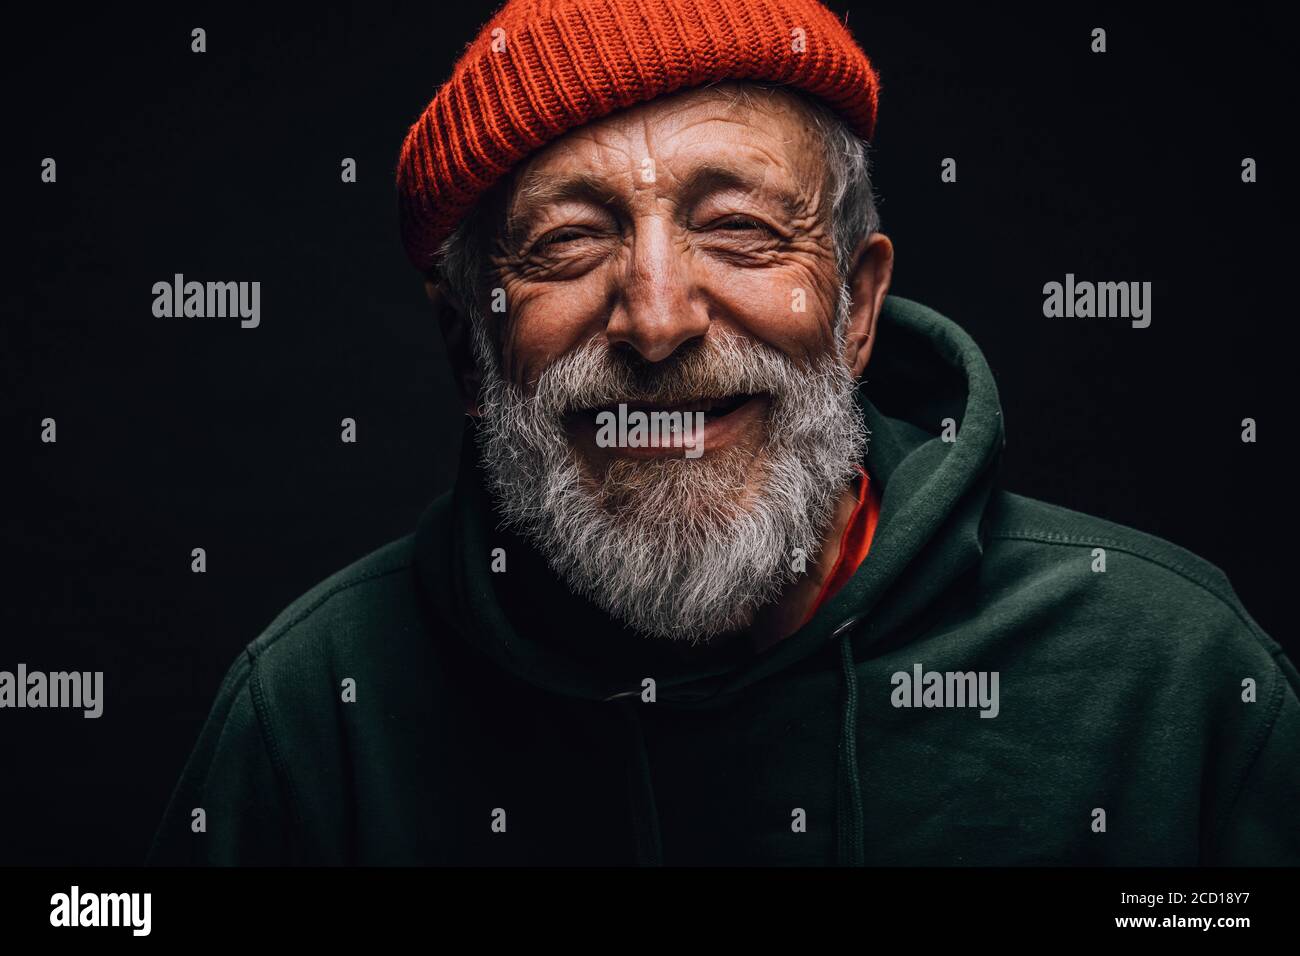 Nahaufnahme Porträt des glücklichen 70-jährigen Optimisten mit lächelndem, faltigem Gesicht, gekleidet in orangenen Hipster-Hut und grünem Hoodie, isoliert über schwarzem BA Stockfoto